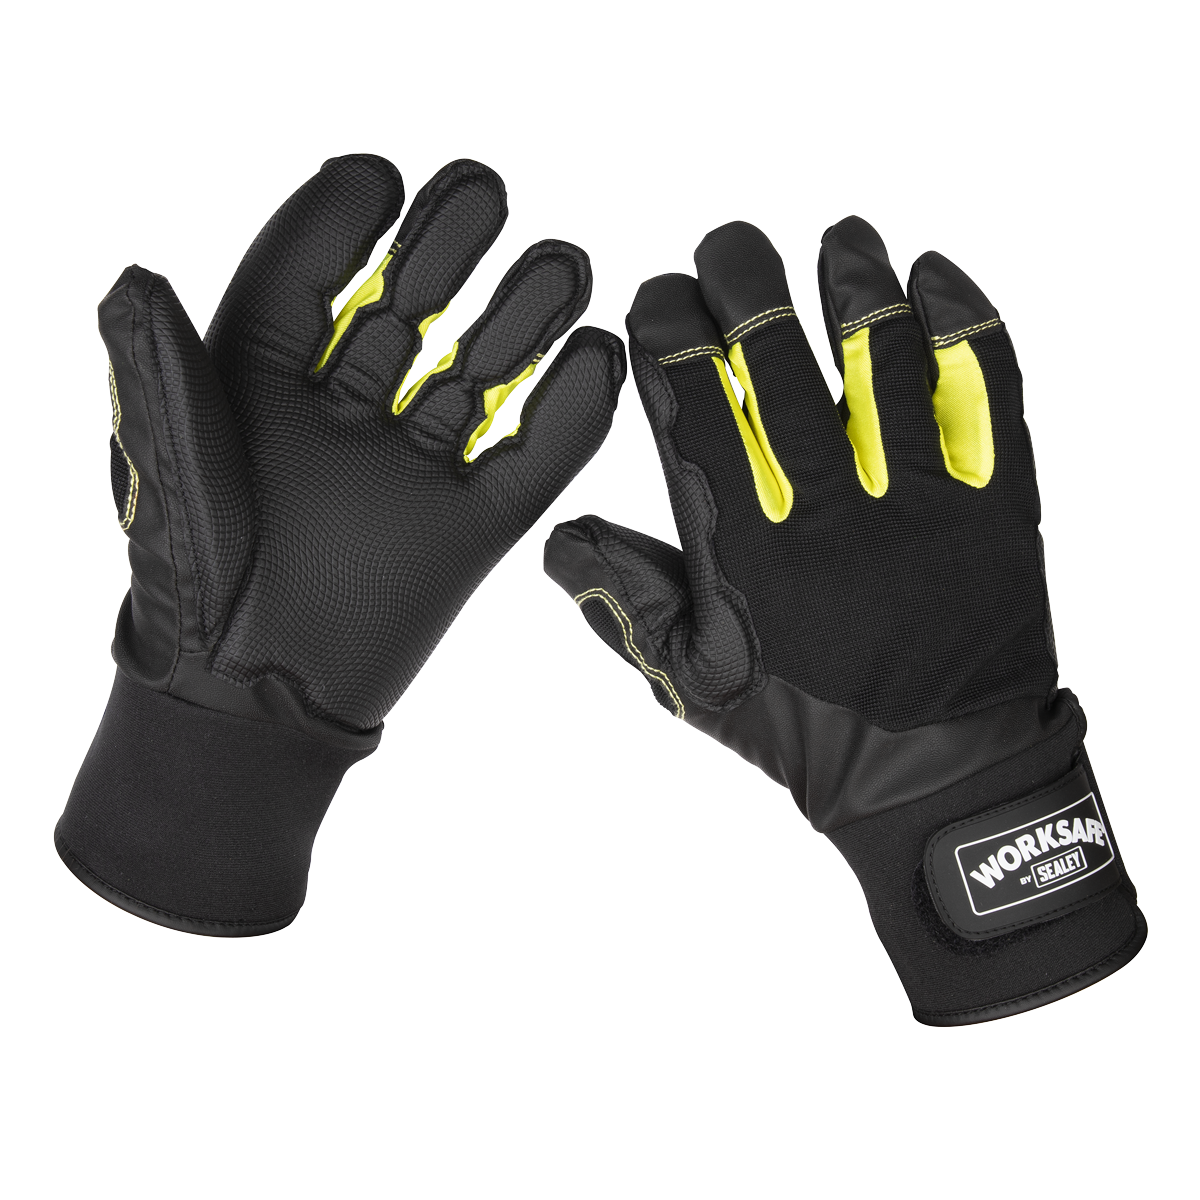 Anti-Vibration Gloves Large - Pair - 9142L - Farming Parts